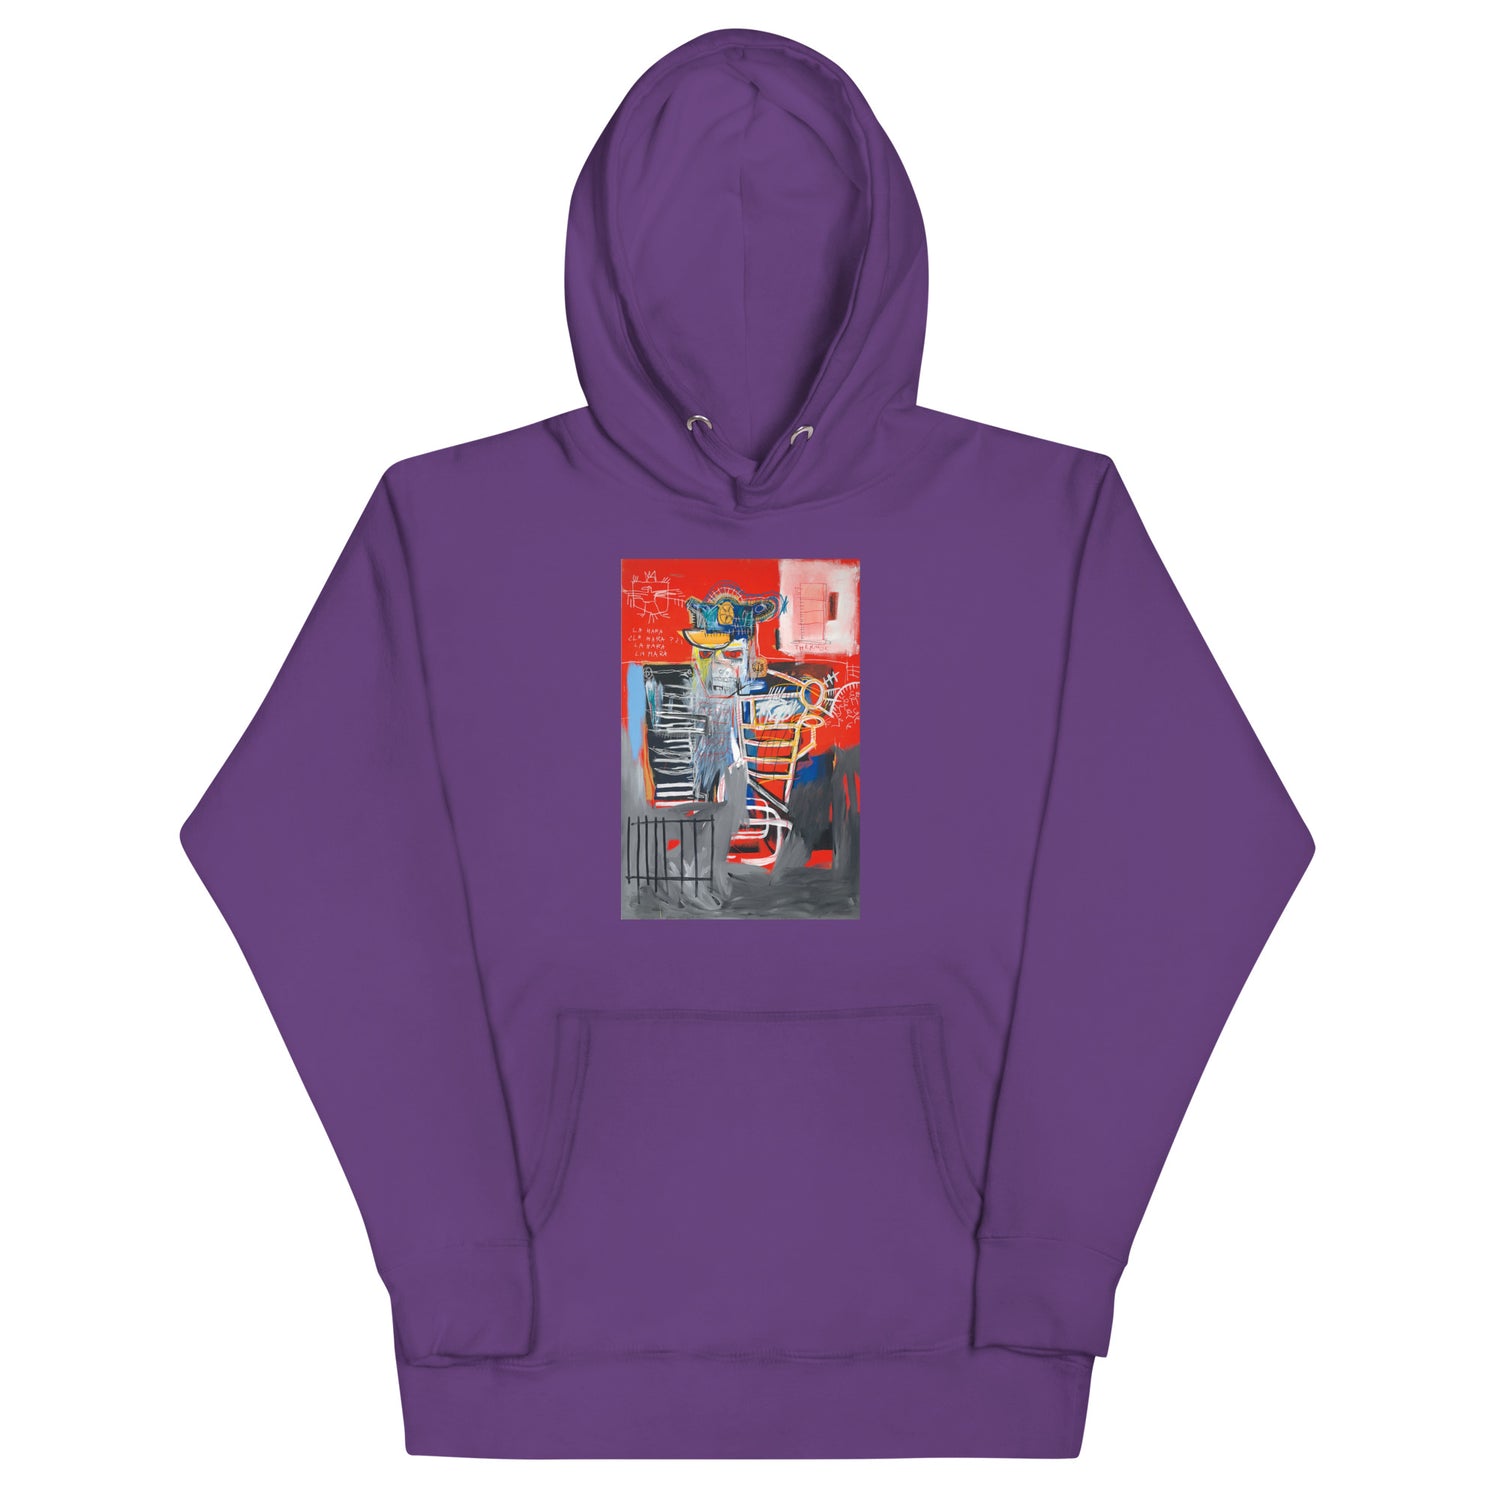 Jean-Michel Basquiat "La Hara" Artwork Printed Premium Streetwear Sweatshirt Hoodie Purple